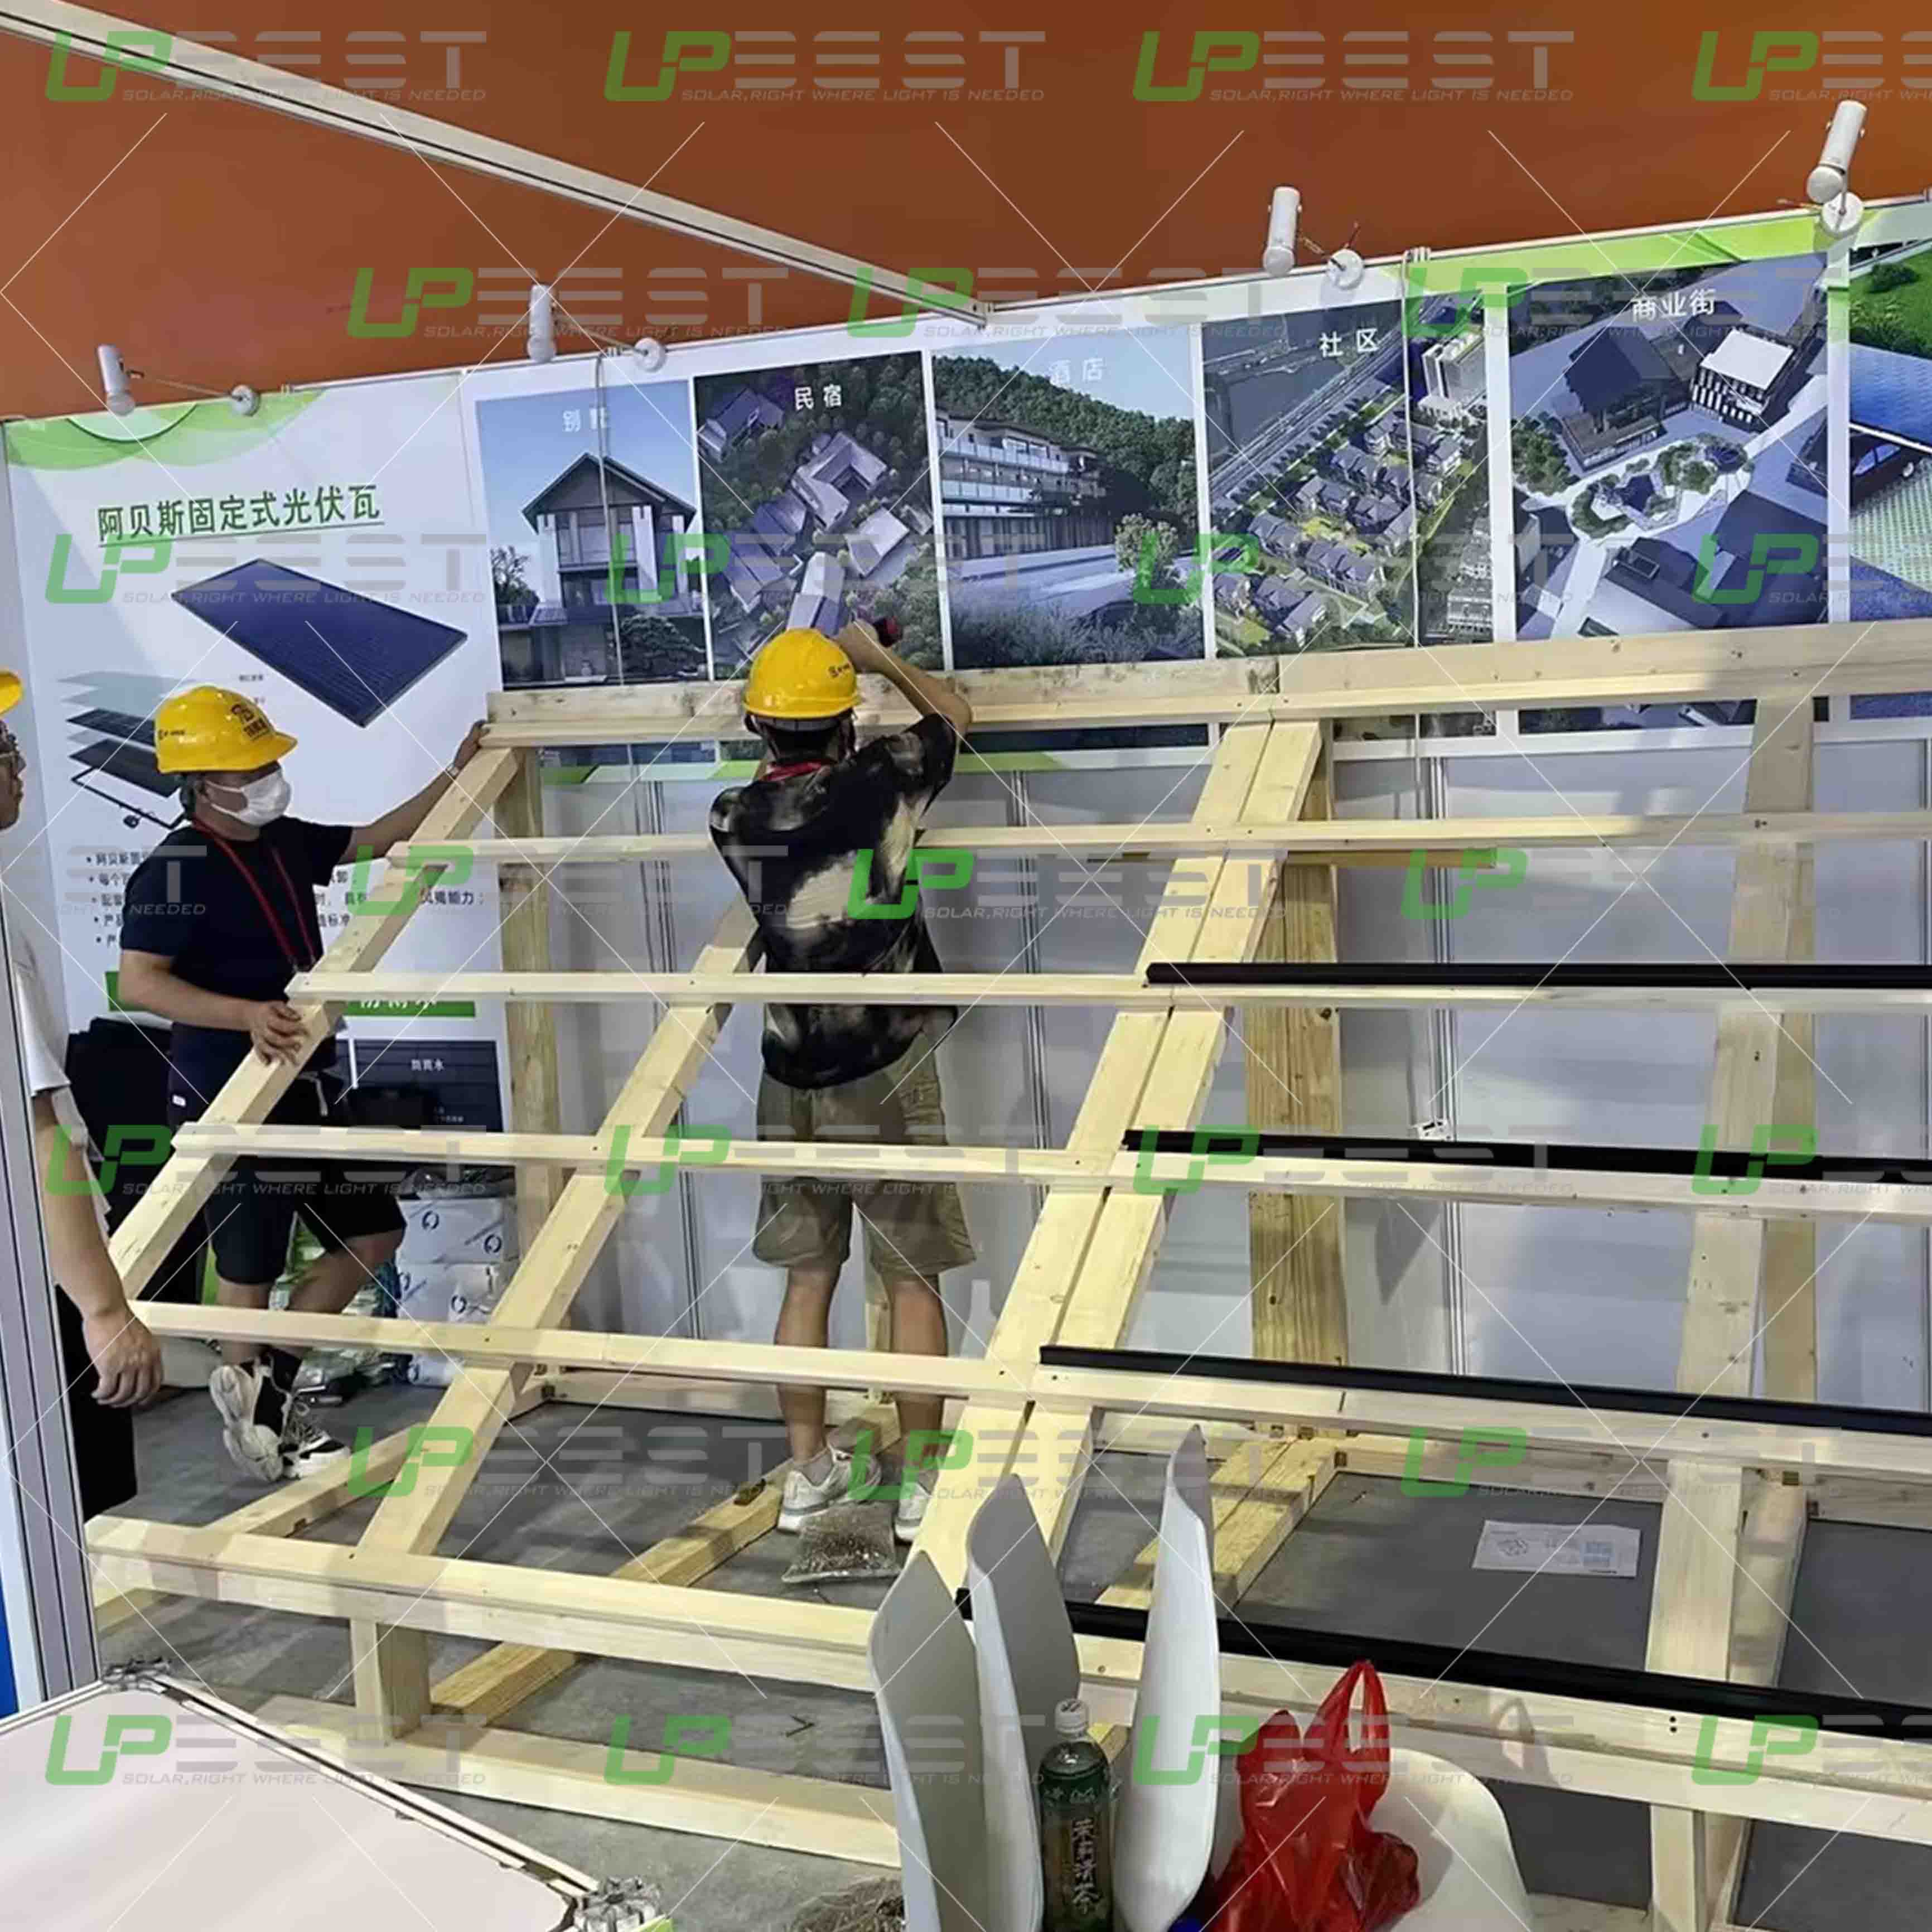 Upbest, 제16회 중국 국제 통합 주택 산업 및 건축 산업화 박람회에서 최첨단 BIPV 패널 전시